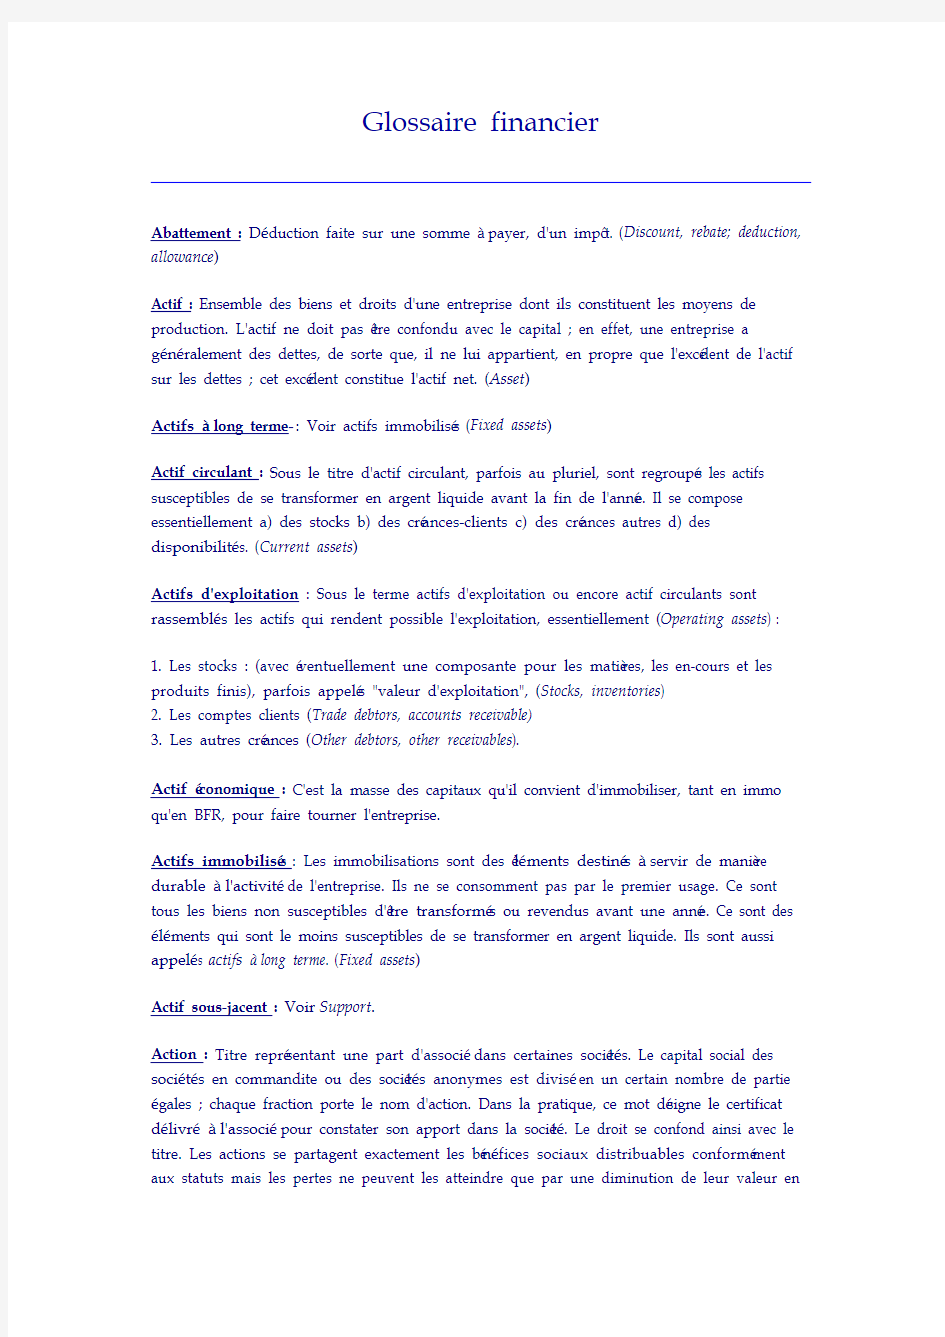 Glossaire financier 法语财务词典